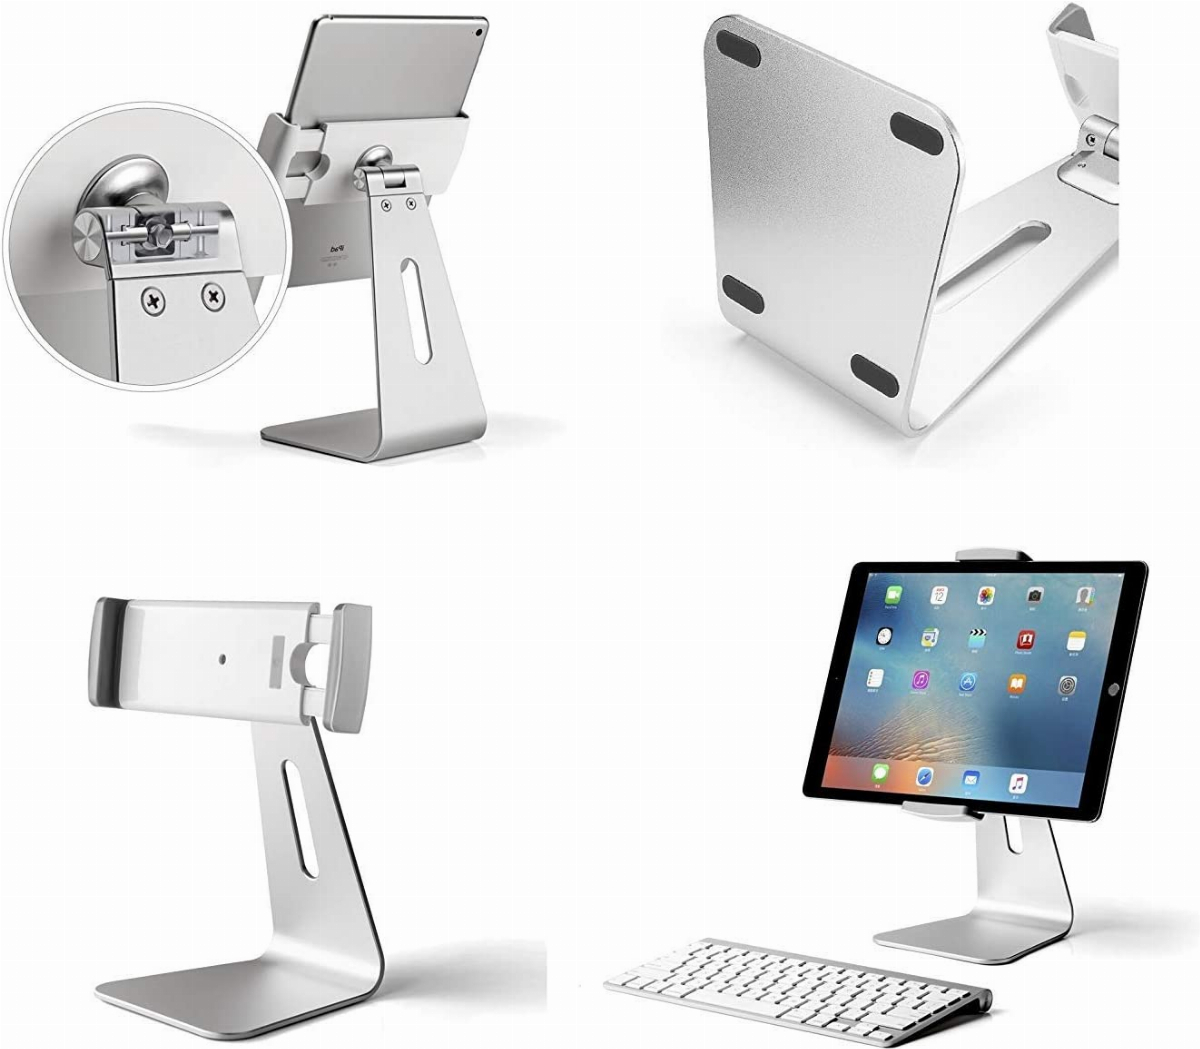 AboveTEK Elegant Tablet Stand, Aluminum iPad Stand Holder, Desktop